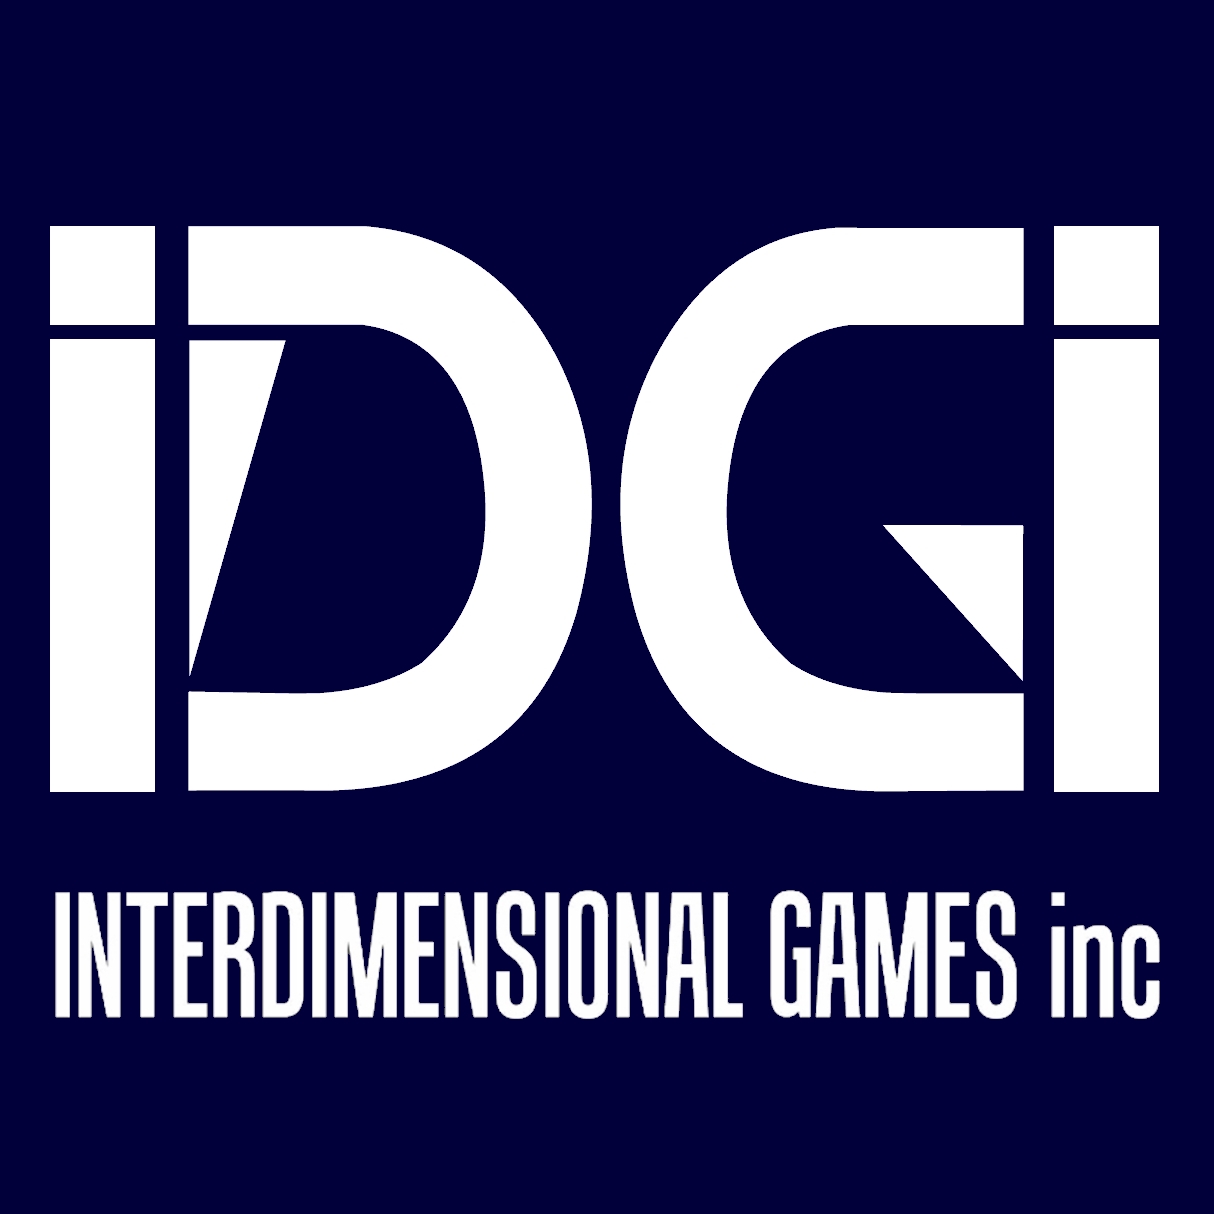 Interdimensional Games Inc